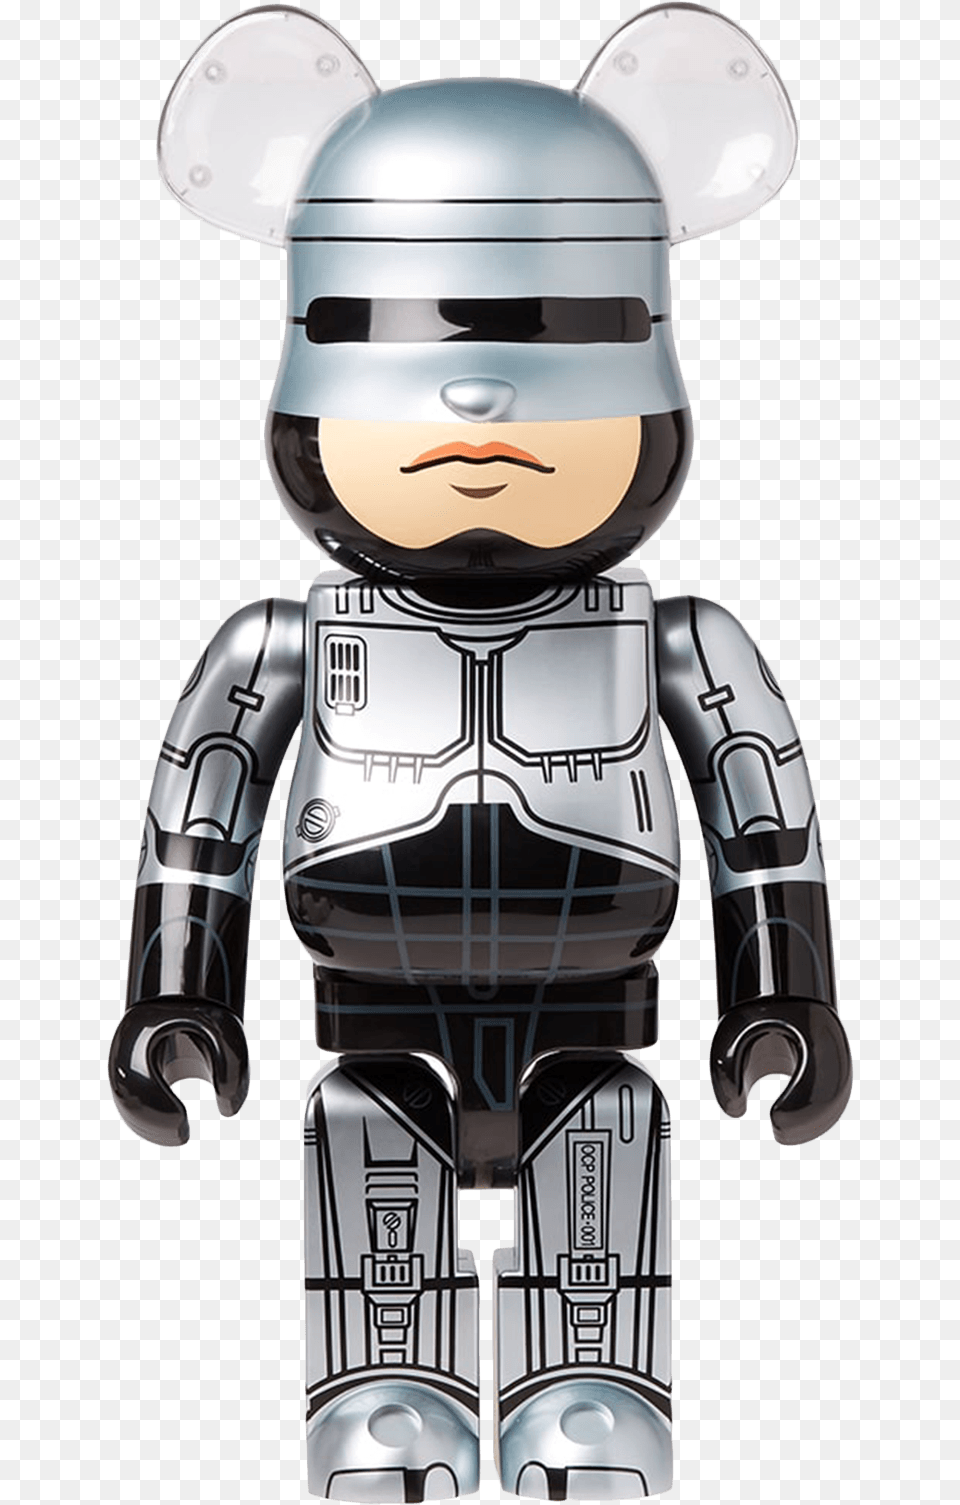 Berbrick 1000 Robocop Bearbrick, Person, Robot, Armor Png Image